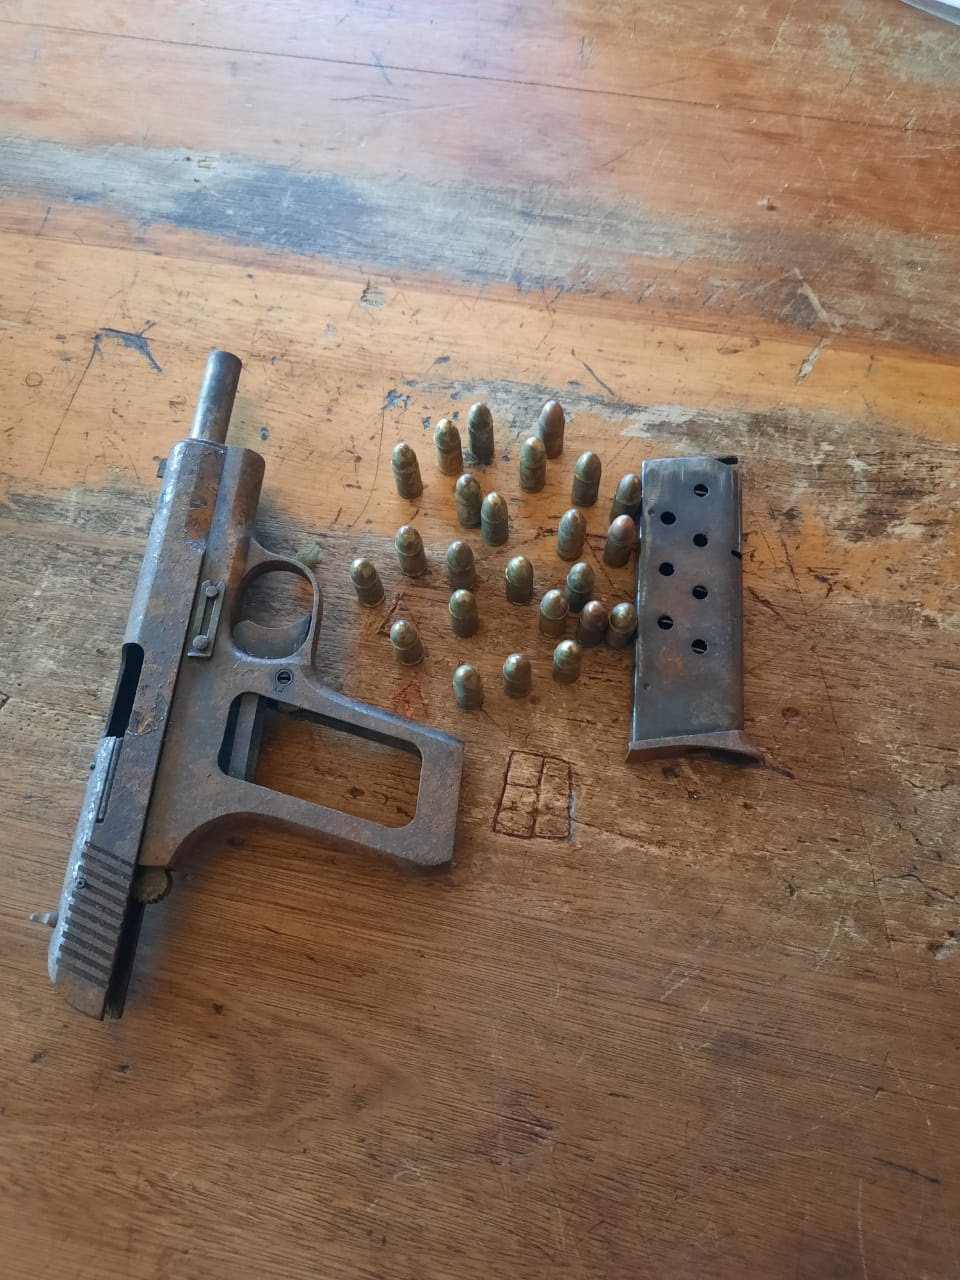 Firearm, ammunition and dagga found at the N3 roadblock